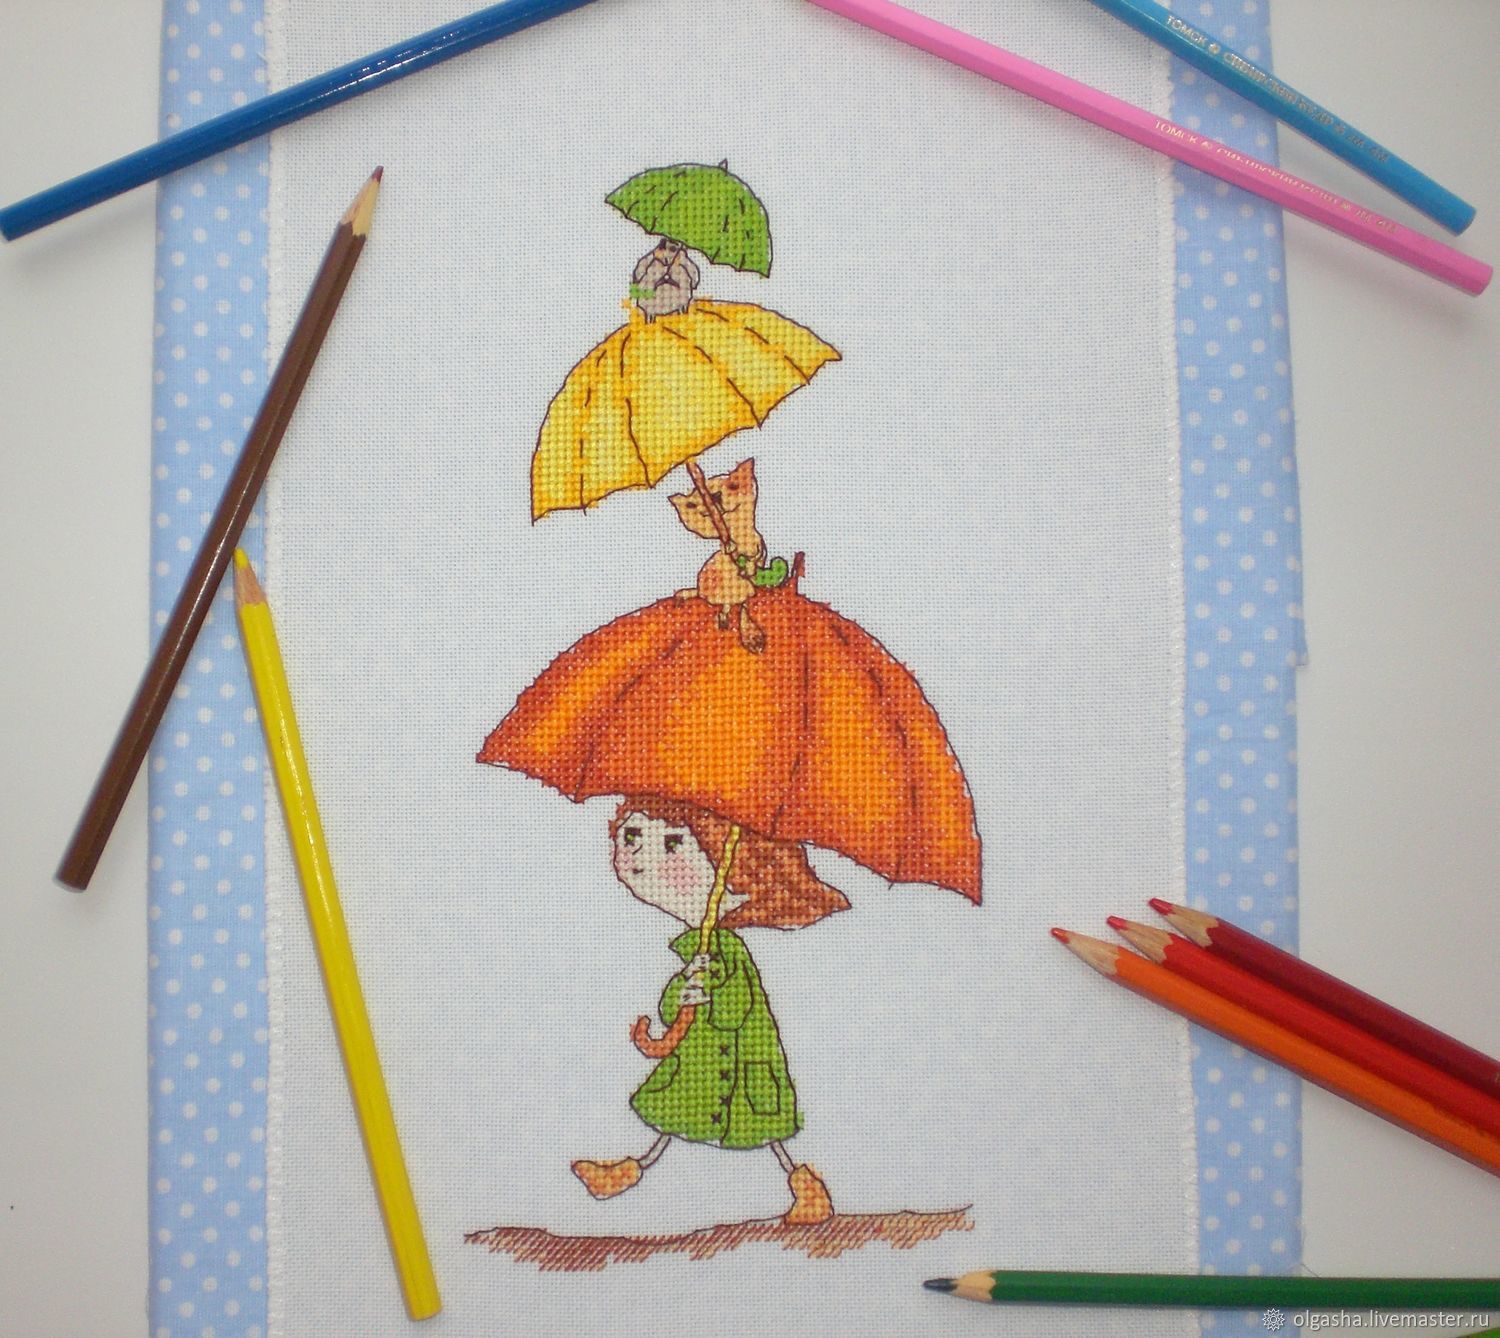 Веселые зонтики. Вышивка Веселые зонтики. Девочка под зонтиком поделка. Neocraft Веселые зонтики. Поделка веселый зонтик.